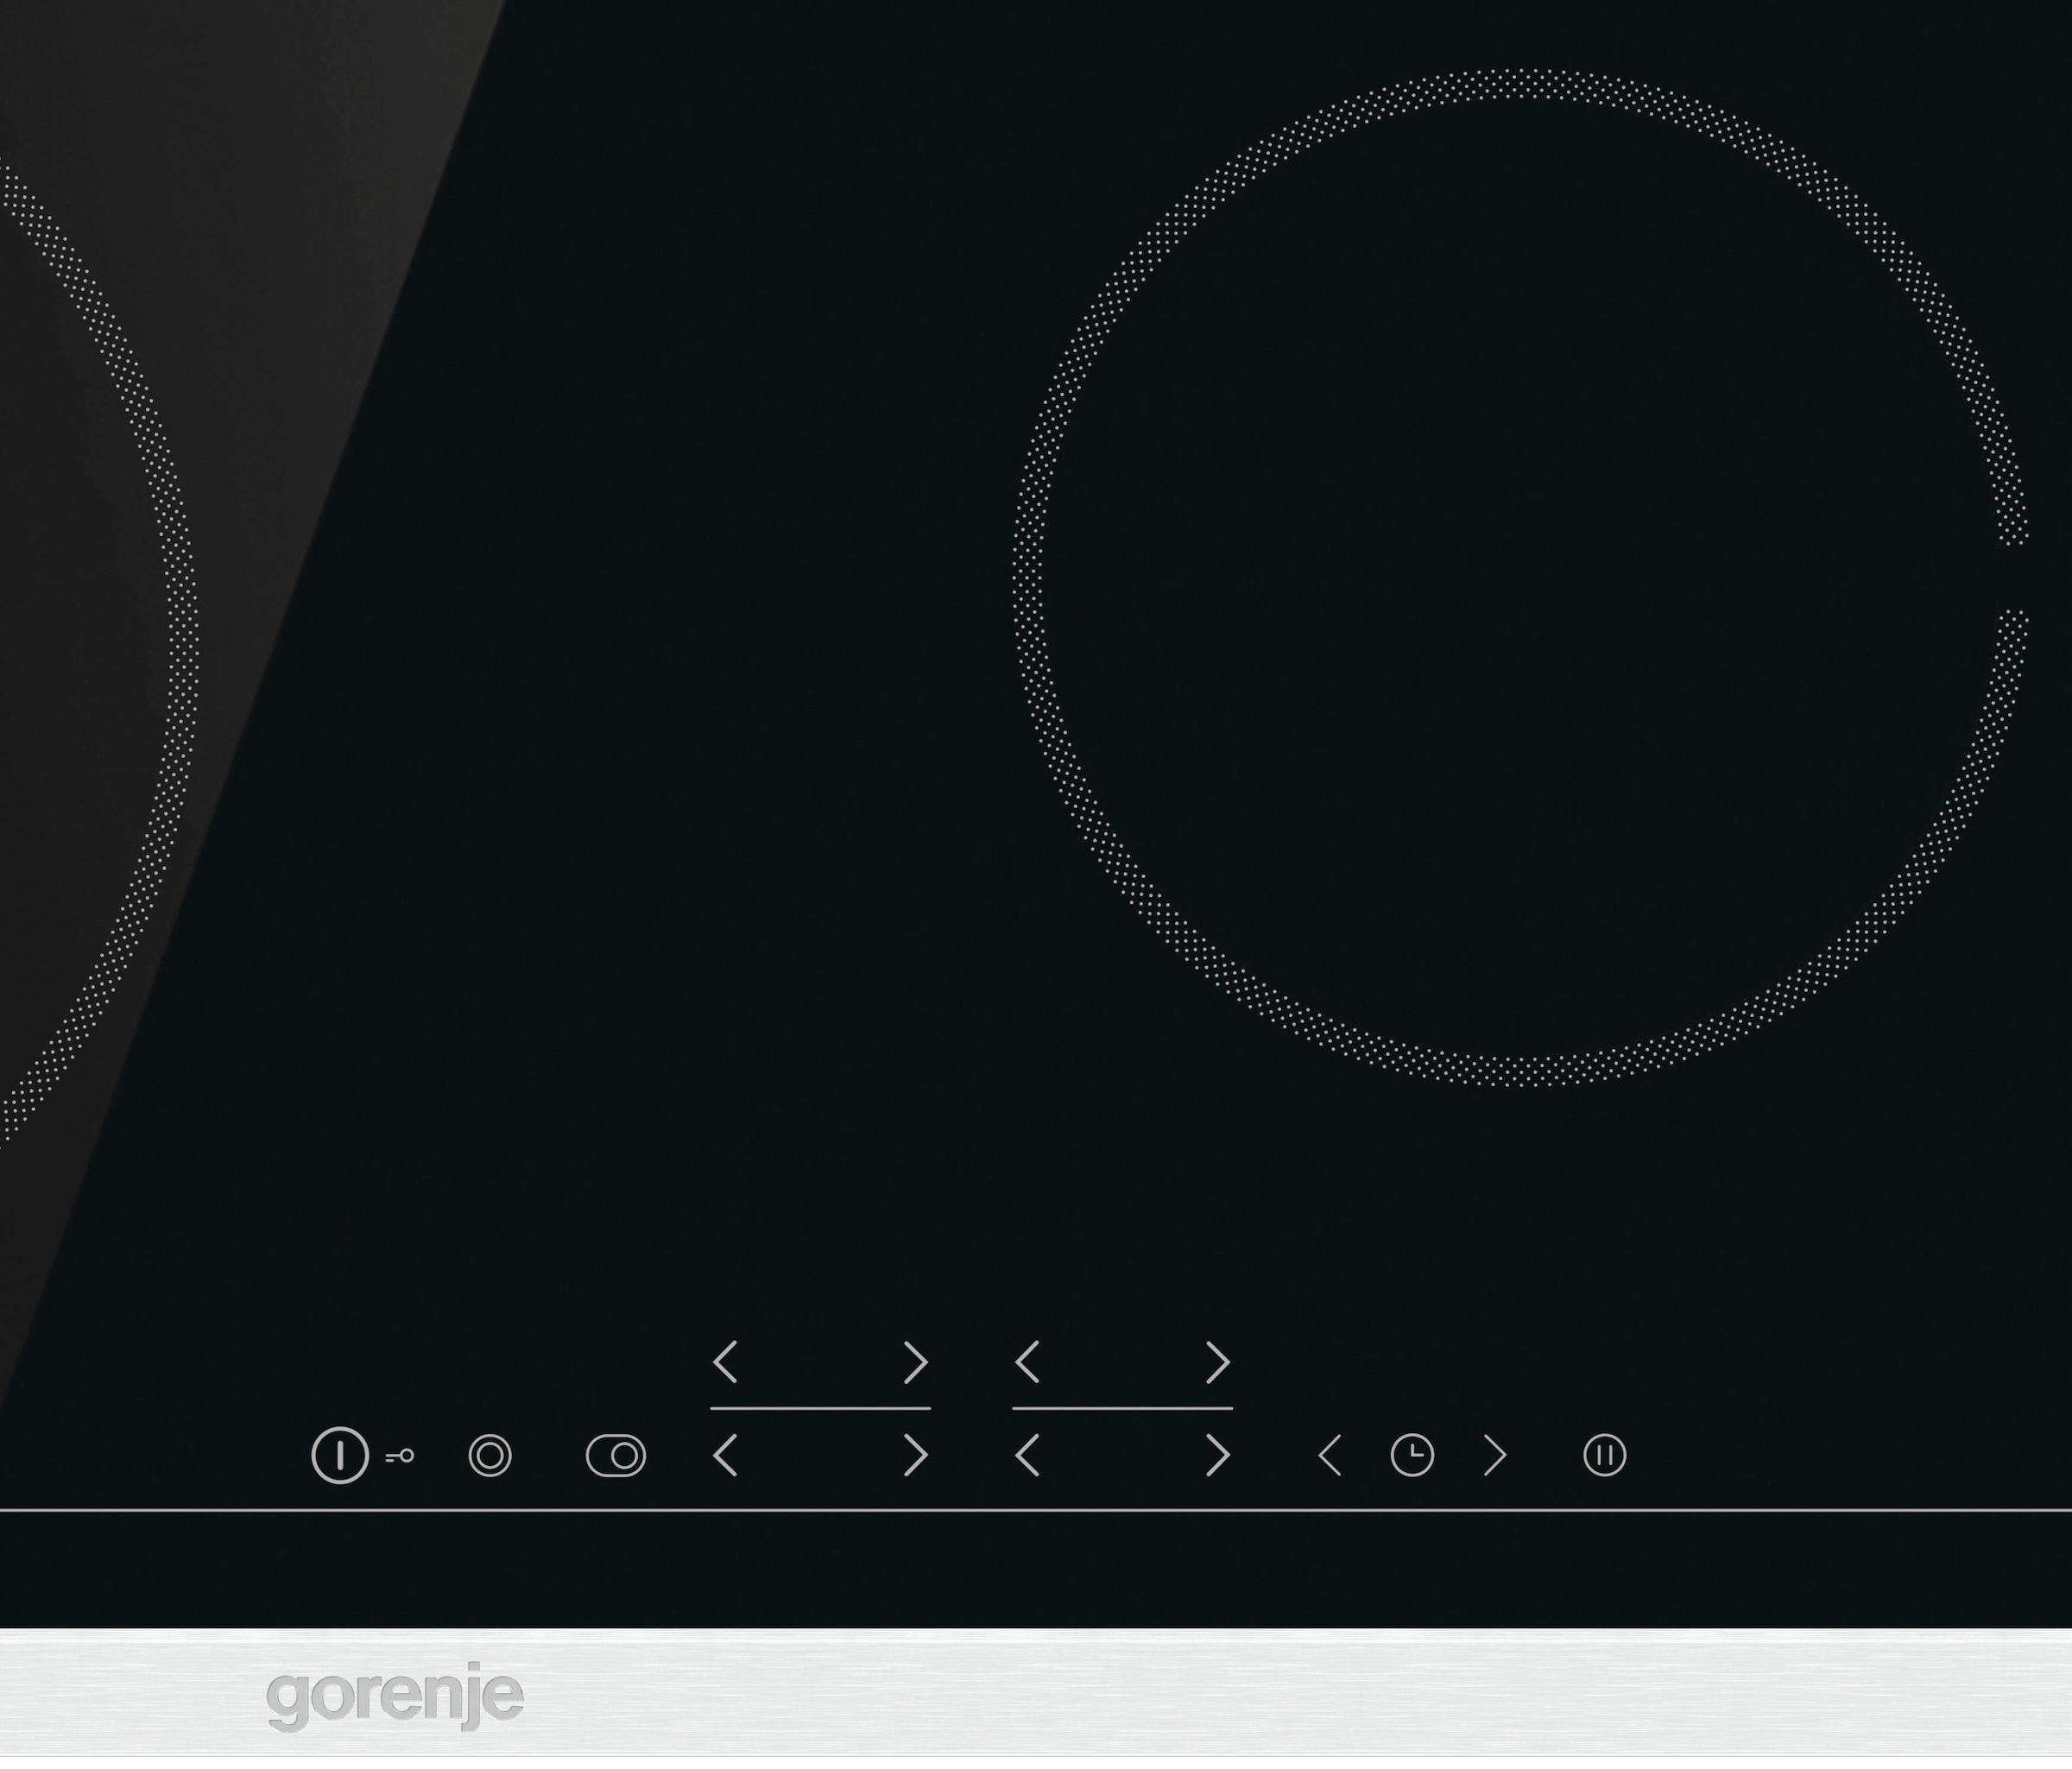 GORENJE Backofen-Set 1-fach-Teleskopauszug »Steam online BOSX6737E06BG, mit kaufen Set«